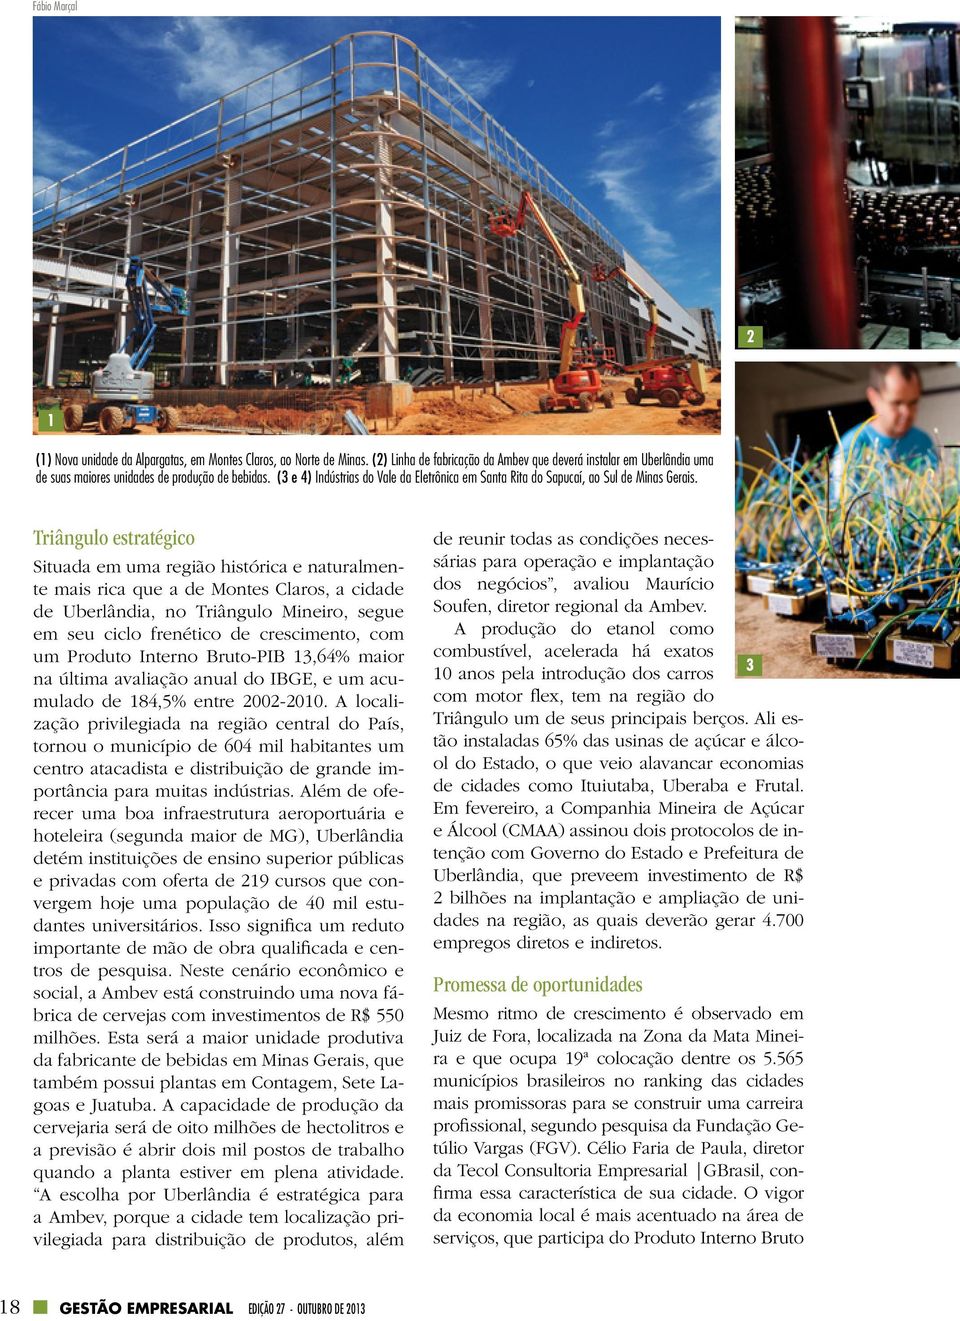 (3 e 4) Indústrias do Vale da Eletrônica em Santa Rita do Sapucaí, ao Sul de Minas Gerais.